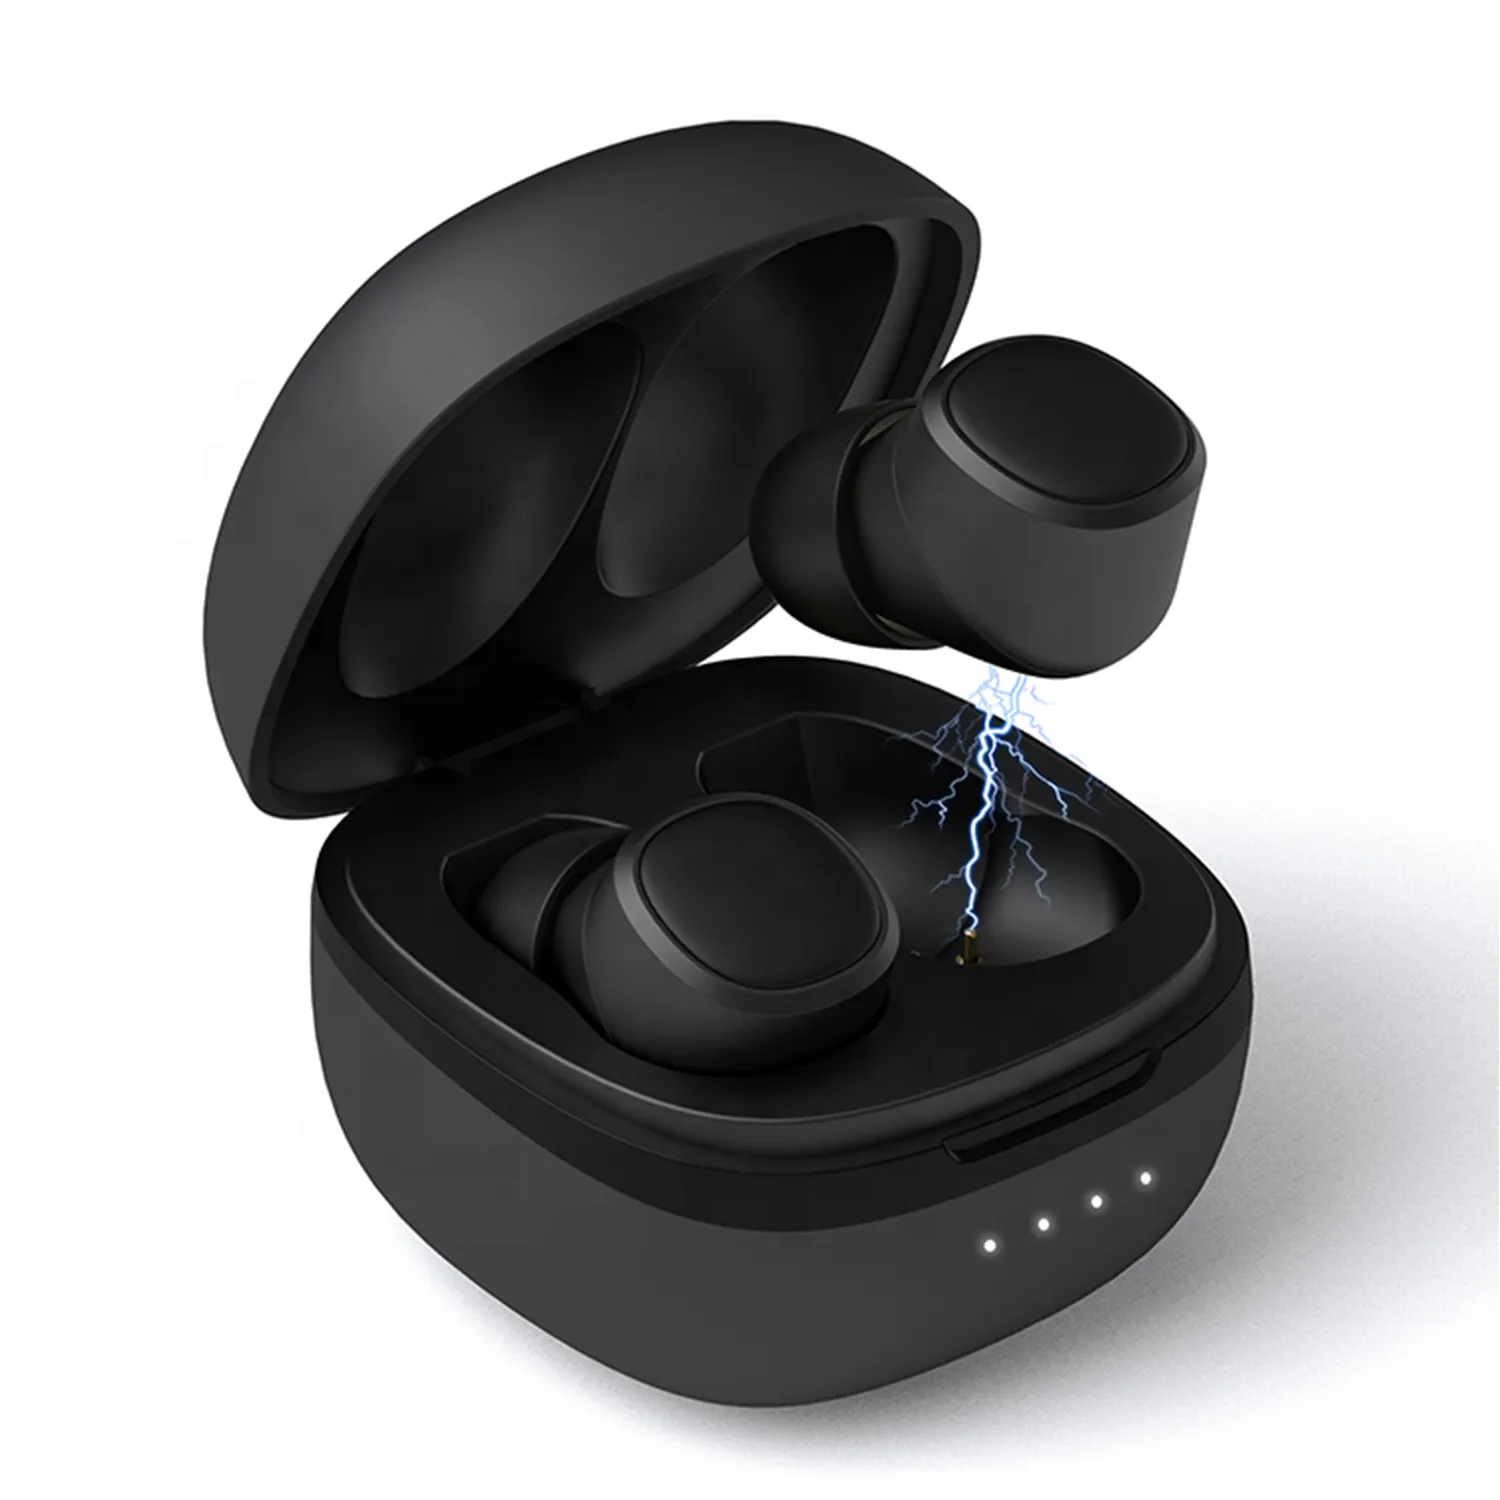 Keine Marke Fabrik Kopfhörer T1 TWS drahtlose Kopfhörer 5.0 Version Headset-Taste Touch Control IPX6 wasserdichten Kopfhörer